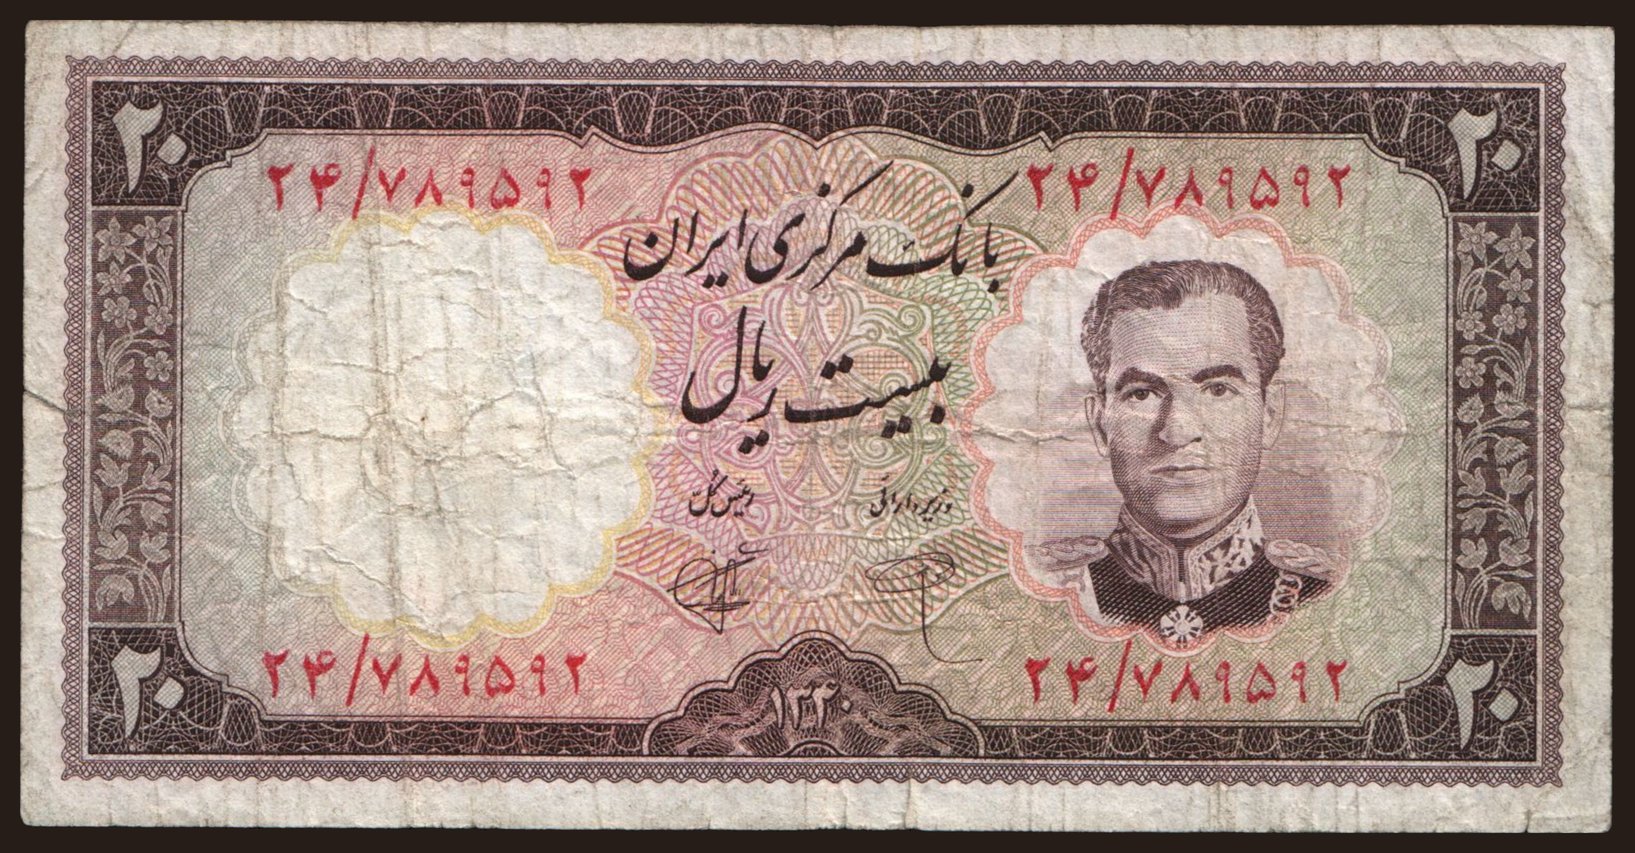 20 rials, 1961